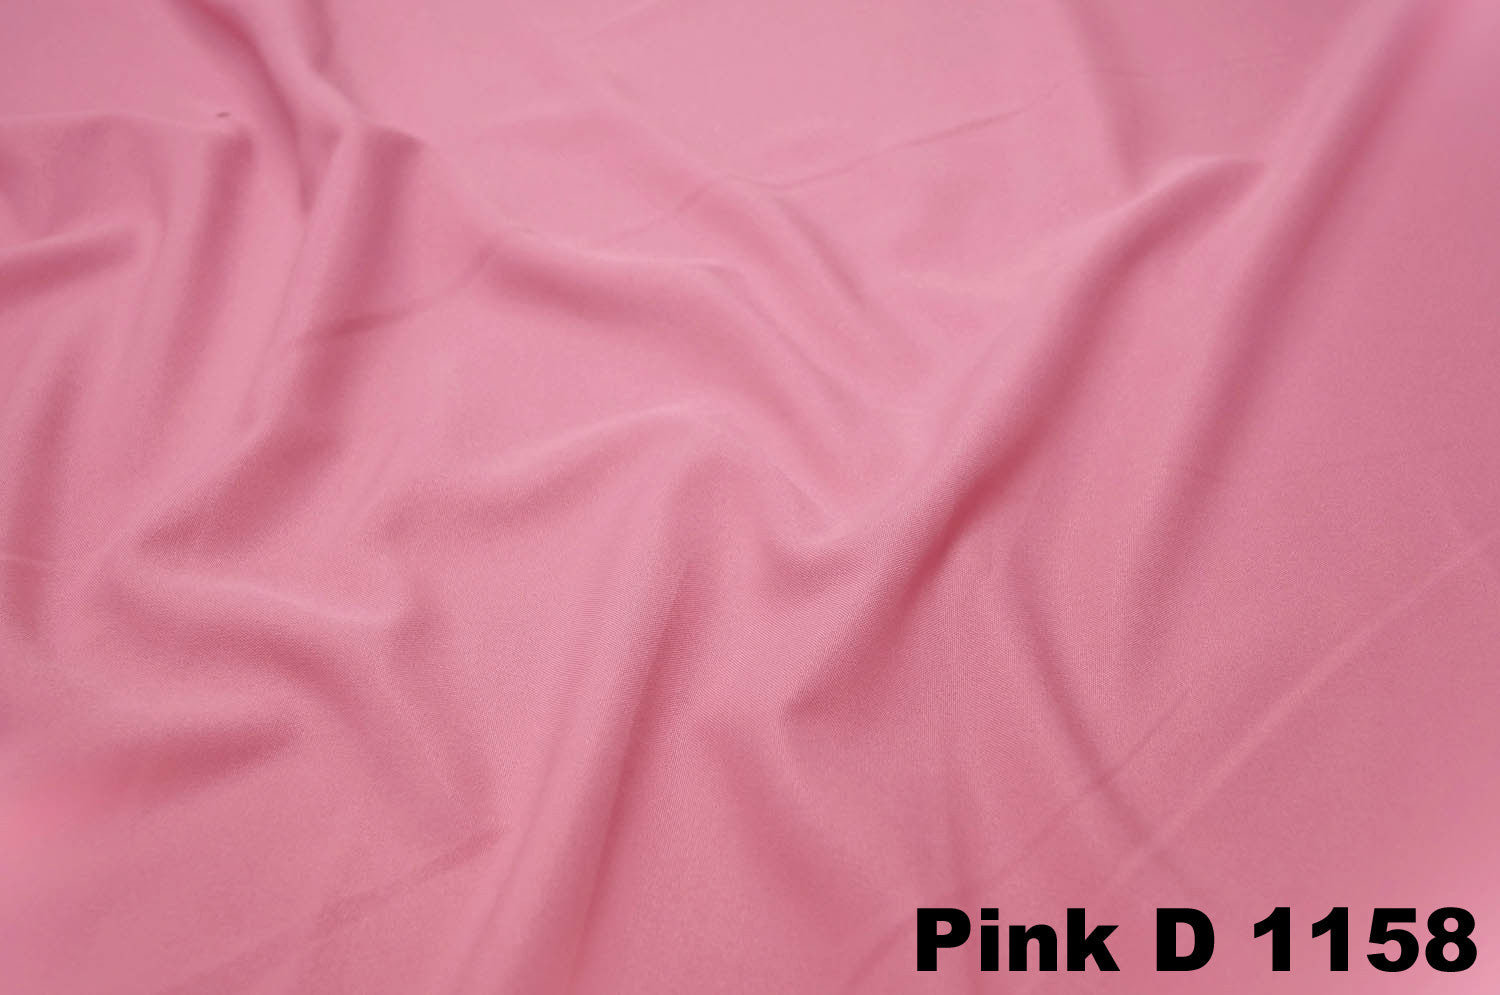 PINK D 1158